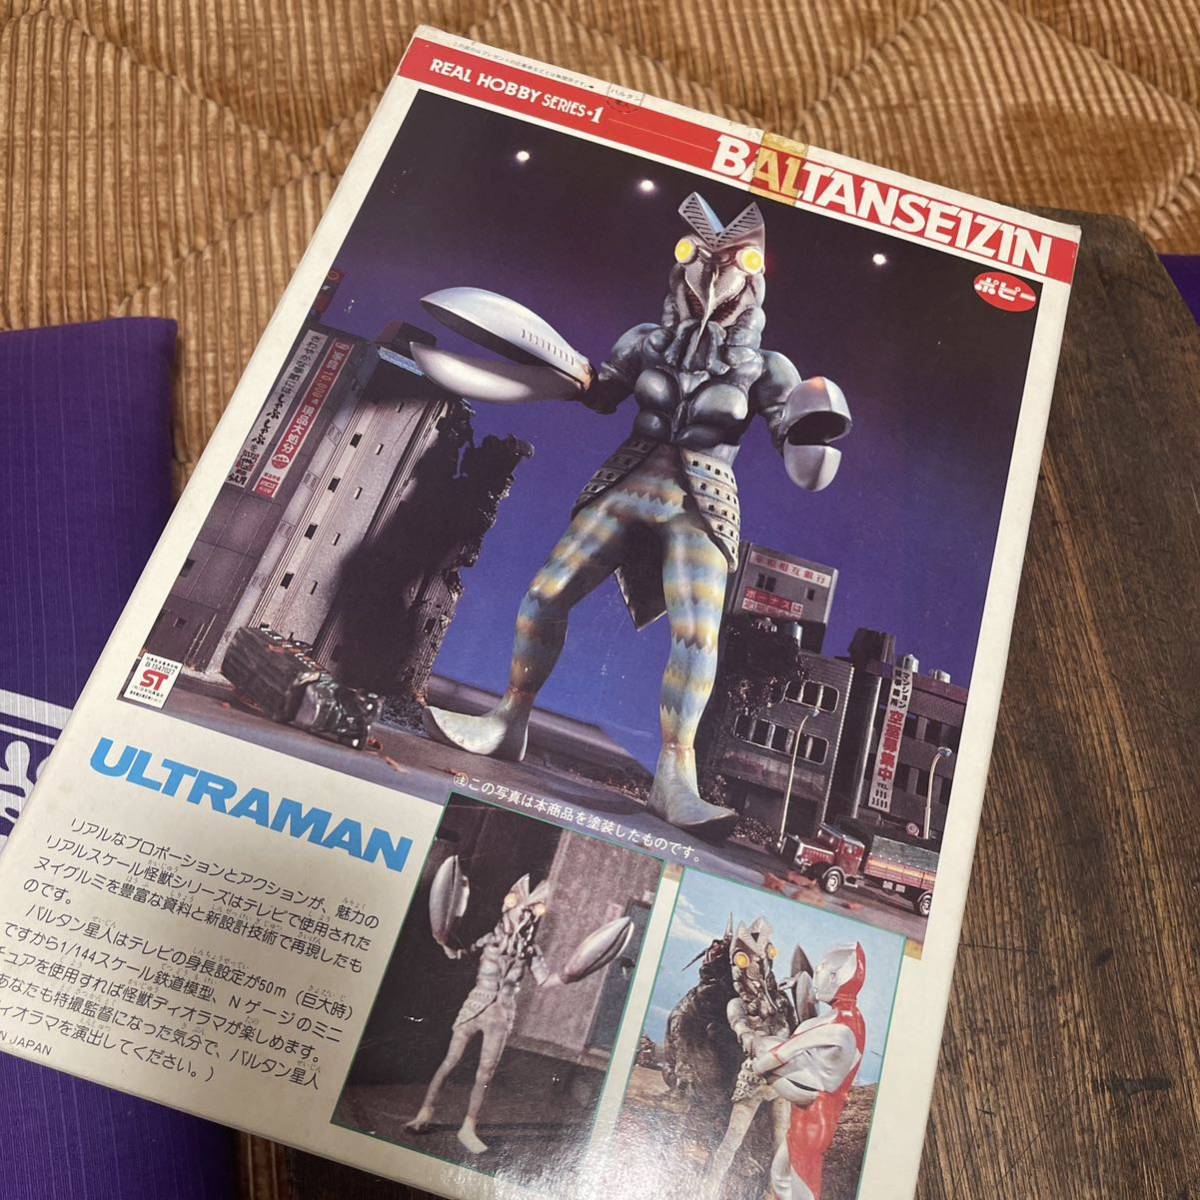  в это время было использовано! Bandai / настоящий хобби серии / Ultraman / Baltan Seijin /2 пункт суммировать / не использовался товар 